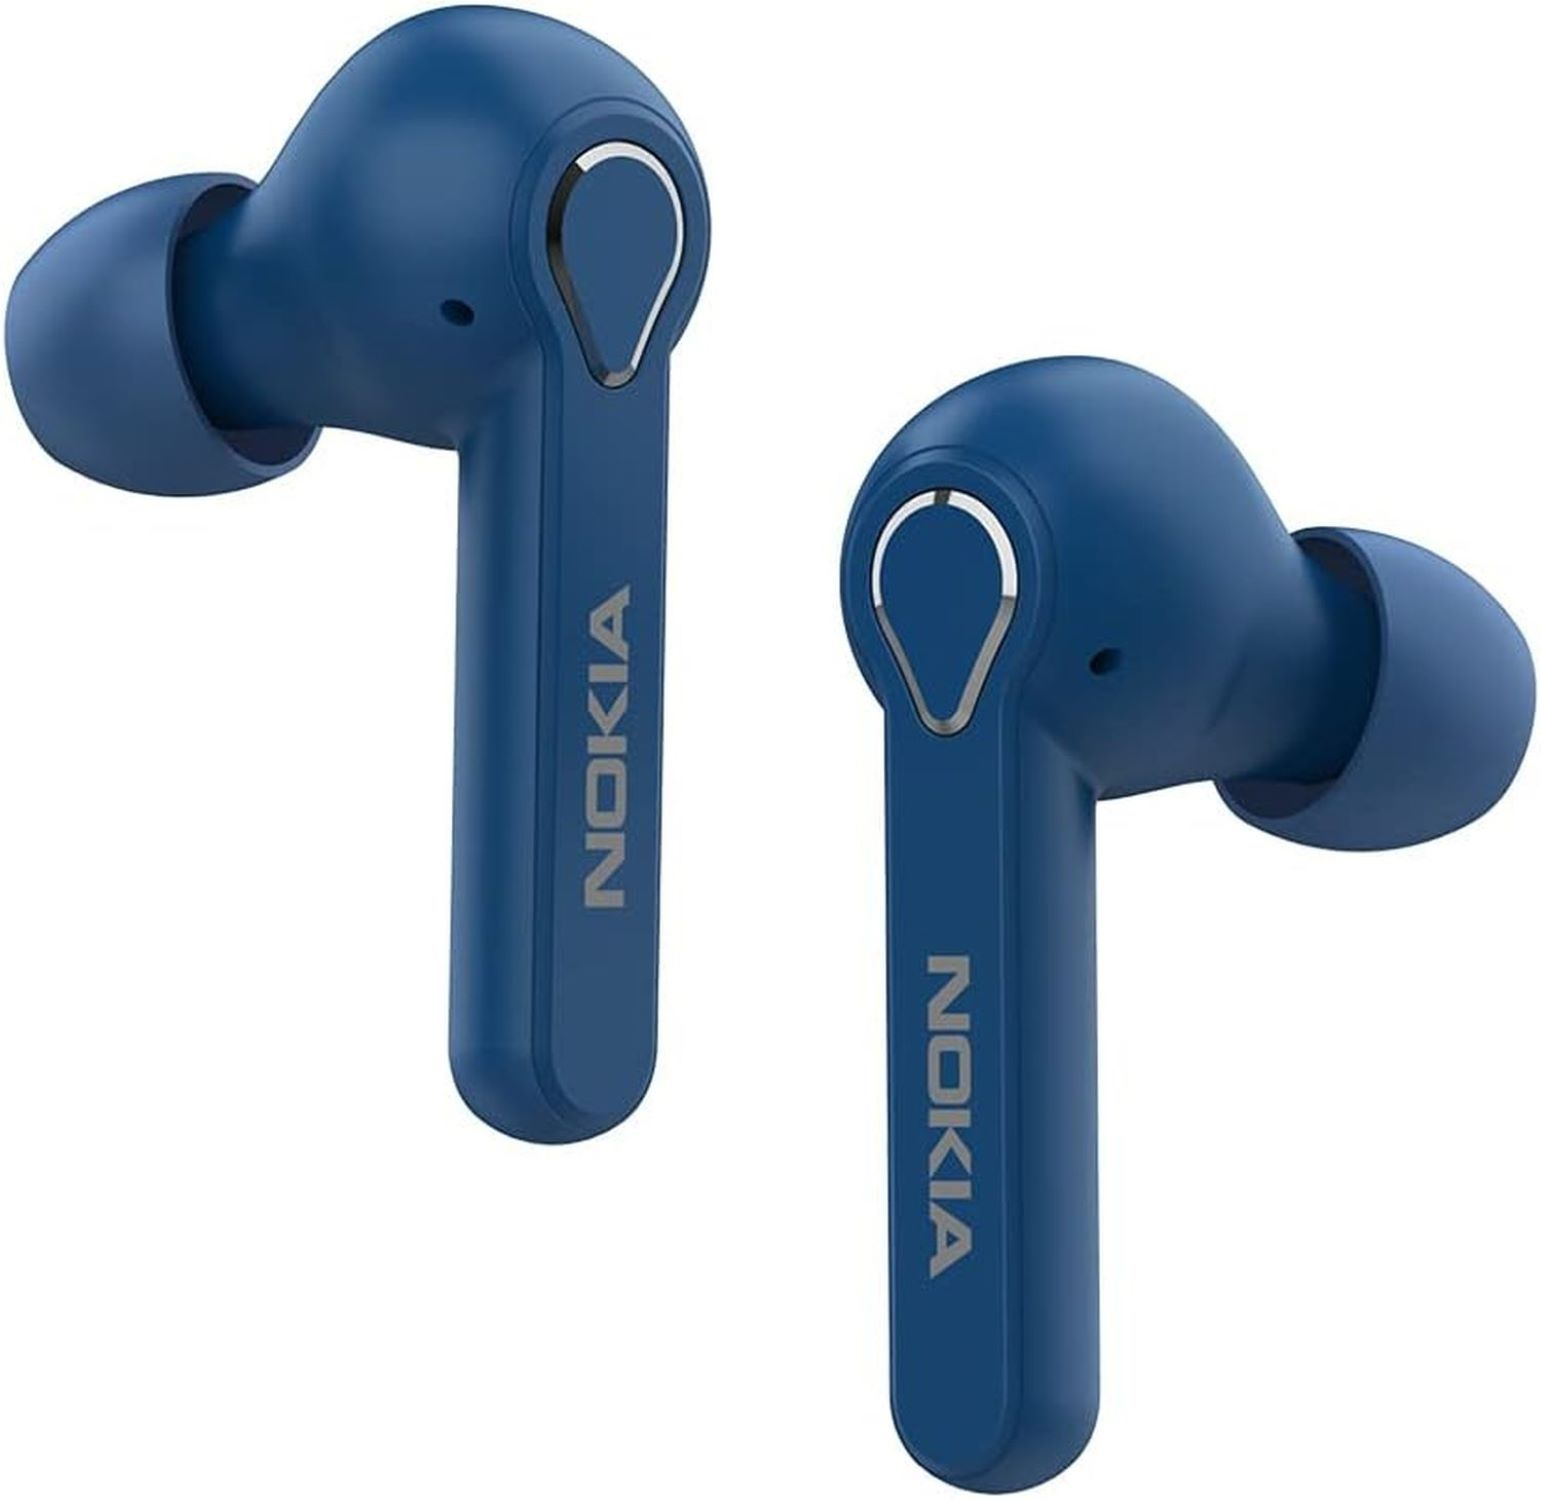 BH-205, kopfhörer Blau In-ear NOKIA Bluetooth